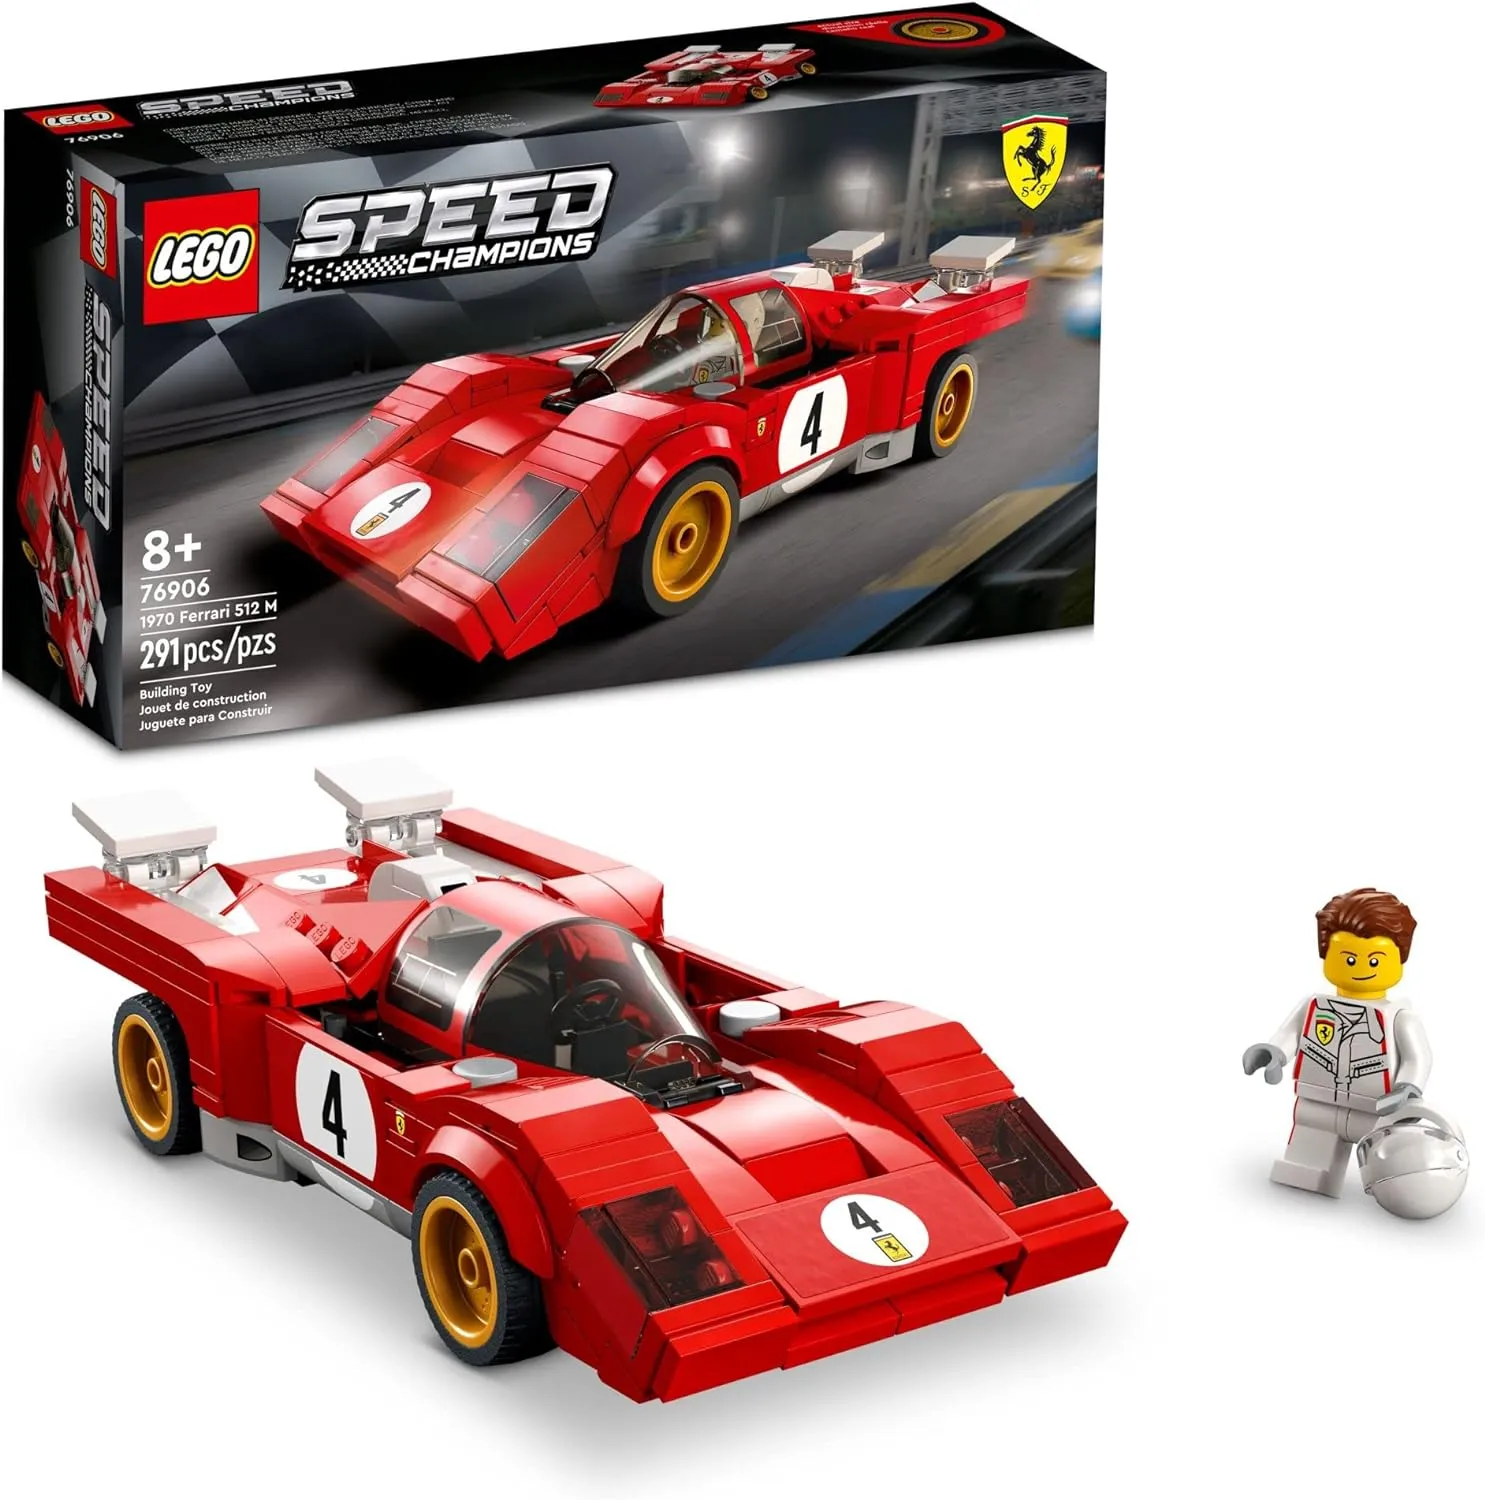 Lego Speed 76906 1970 Ferrari 512 M 291 Pzs